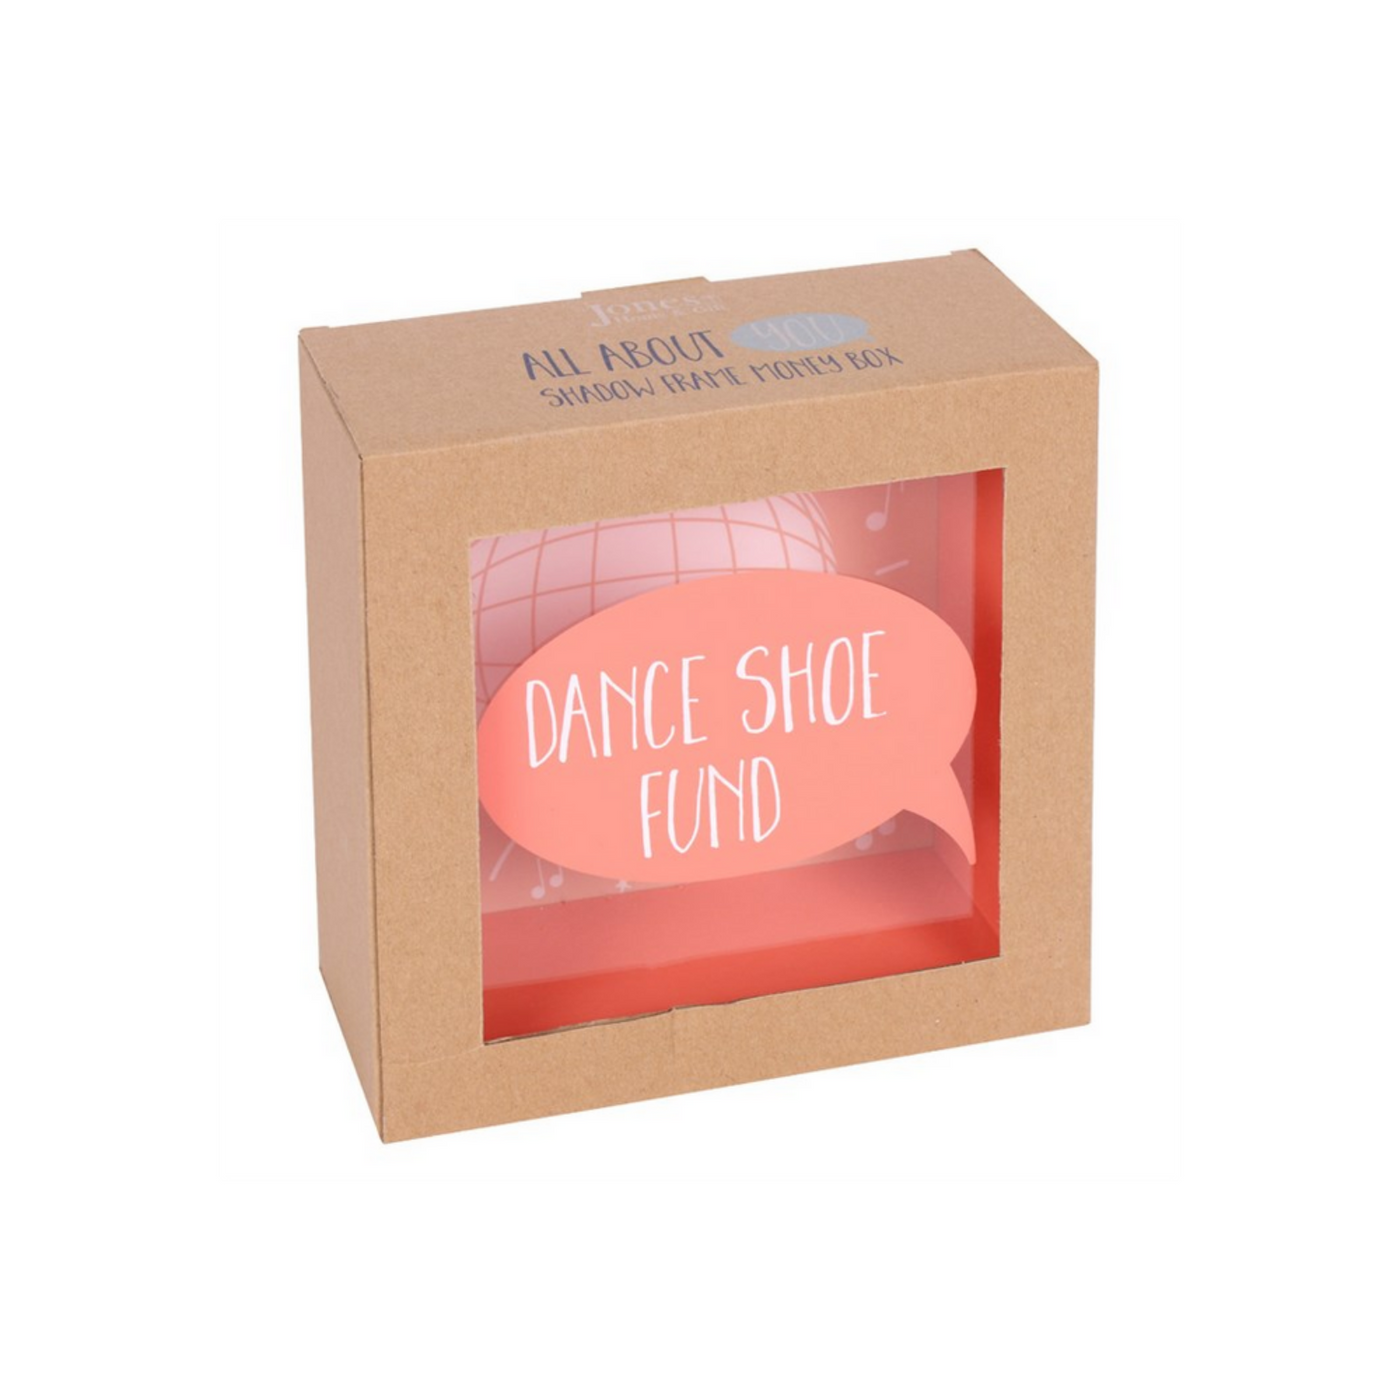 Dance Shoe Fund Orange Wooden Glass Money Box.